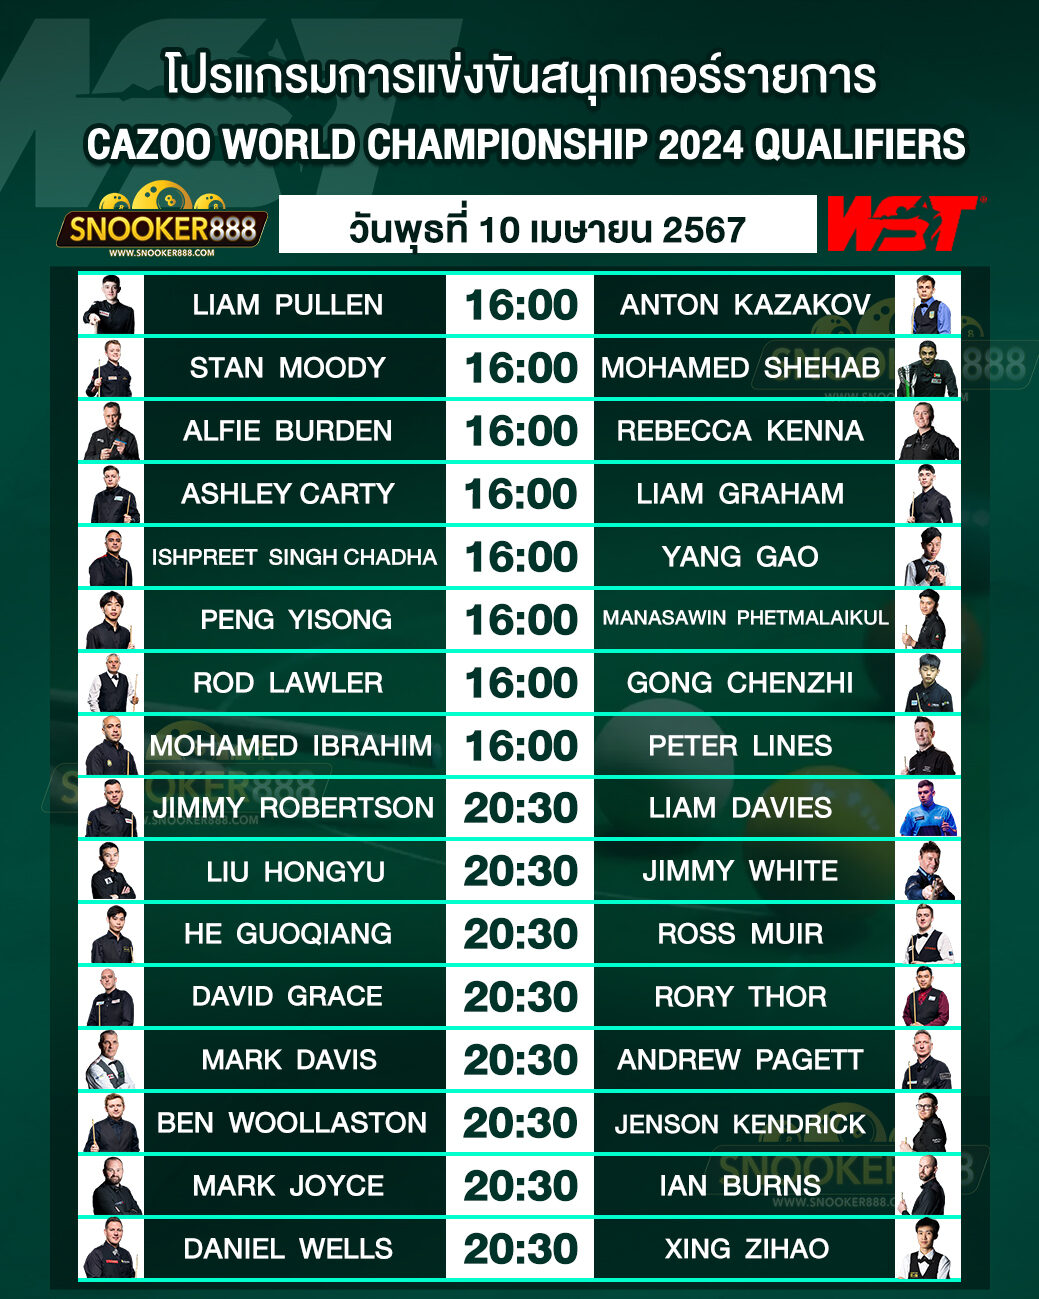 โปรแกรมการแข่งขันสนุกเกอร์ CAZOO WORLD CHAMPIONSHIP 2024 QUALIFIERS วันที่ 10 เม.ย. 67